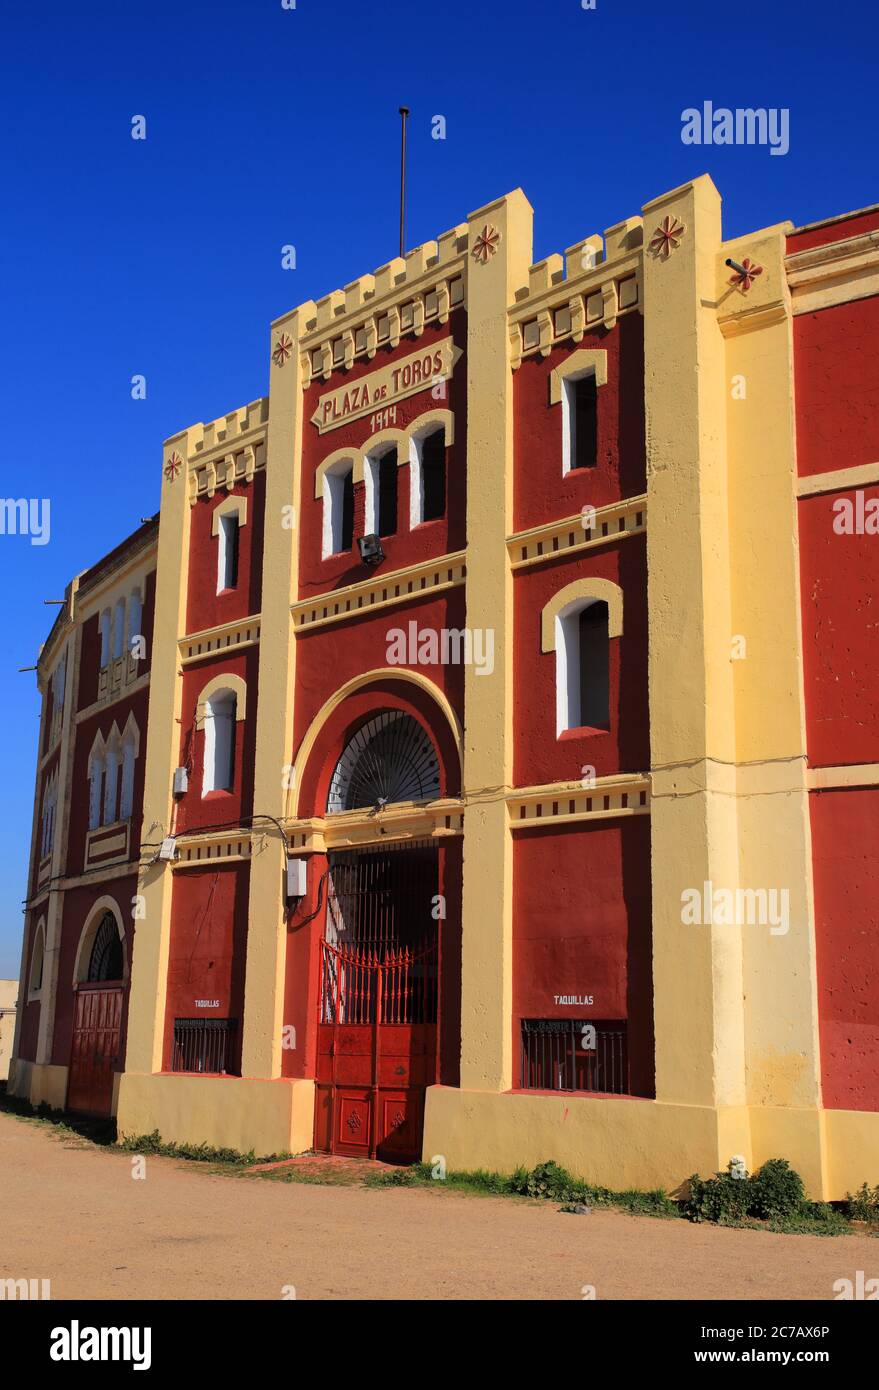 Merida, provincia di Badajoz, Estremadura, Spagna. Facciata esterna dello storico corride. Progettato con dettagli architettonici in stile arabo-moresco. Foto Stock